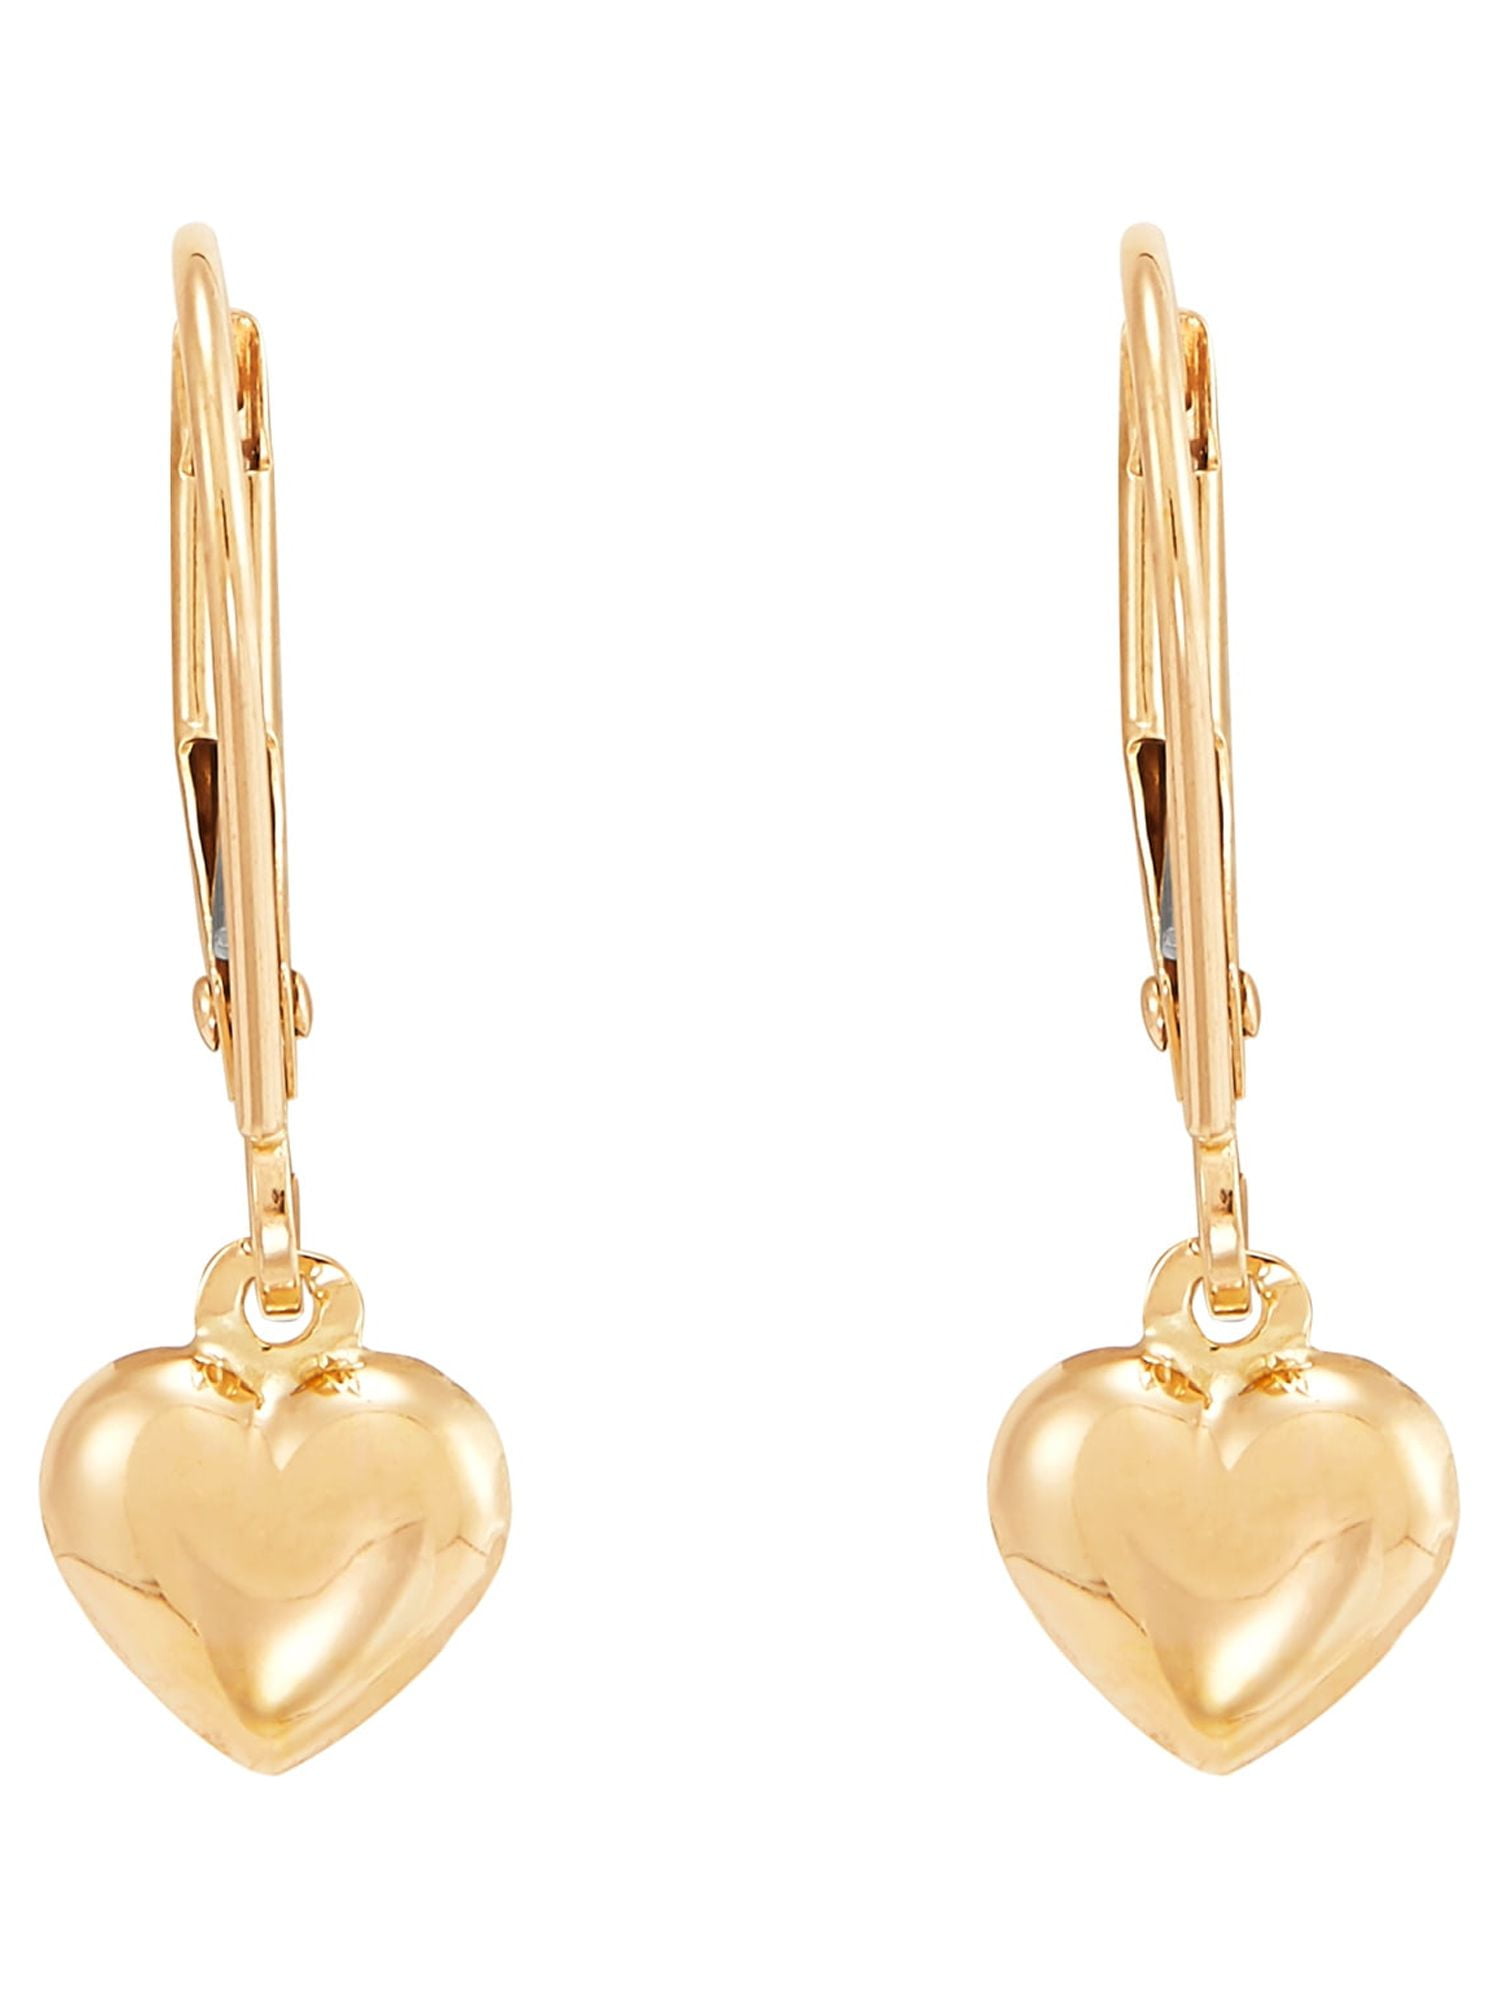 Gold Drop Earrings Water Drop Earrings Gold Tear Drop Pendants Large Drops  Minimalist Earrings Gift for Her - Etsy Canada